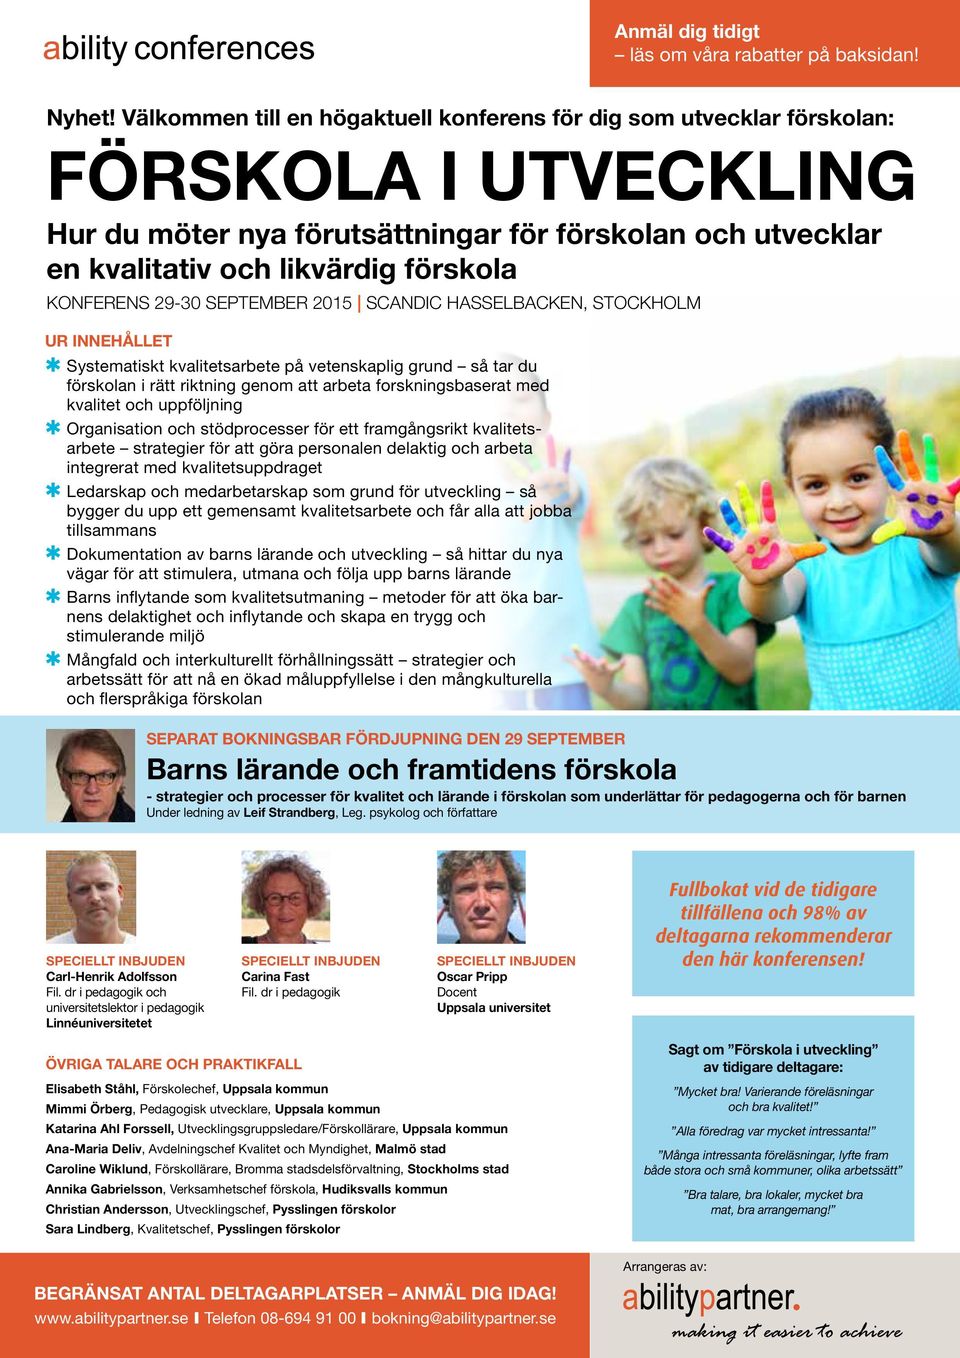 KONFERENS 29-30 SEPTEMBER 2015 SCANDIC HASSELBACKEN, STOCKHOLM UR INNEHÅLLET Systematiskt kvalitetsarbete på vetenskaplig grund så tar du förskolan i rätt riktning genom att arbeta forskningsbaserat